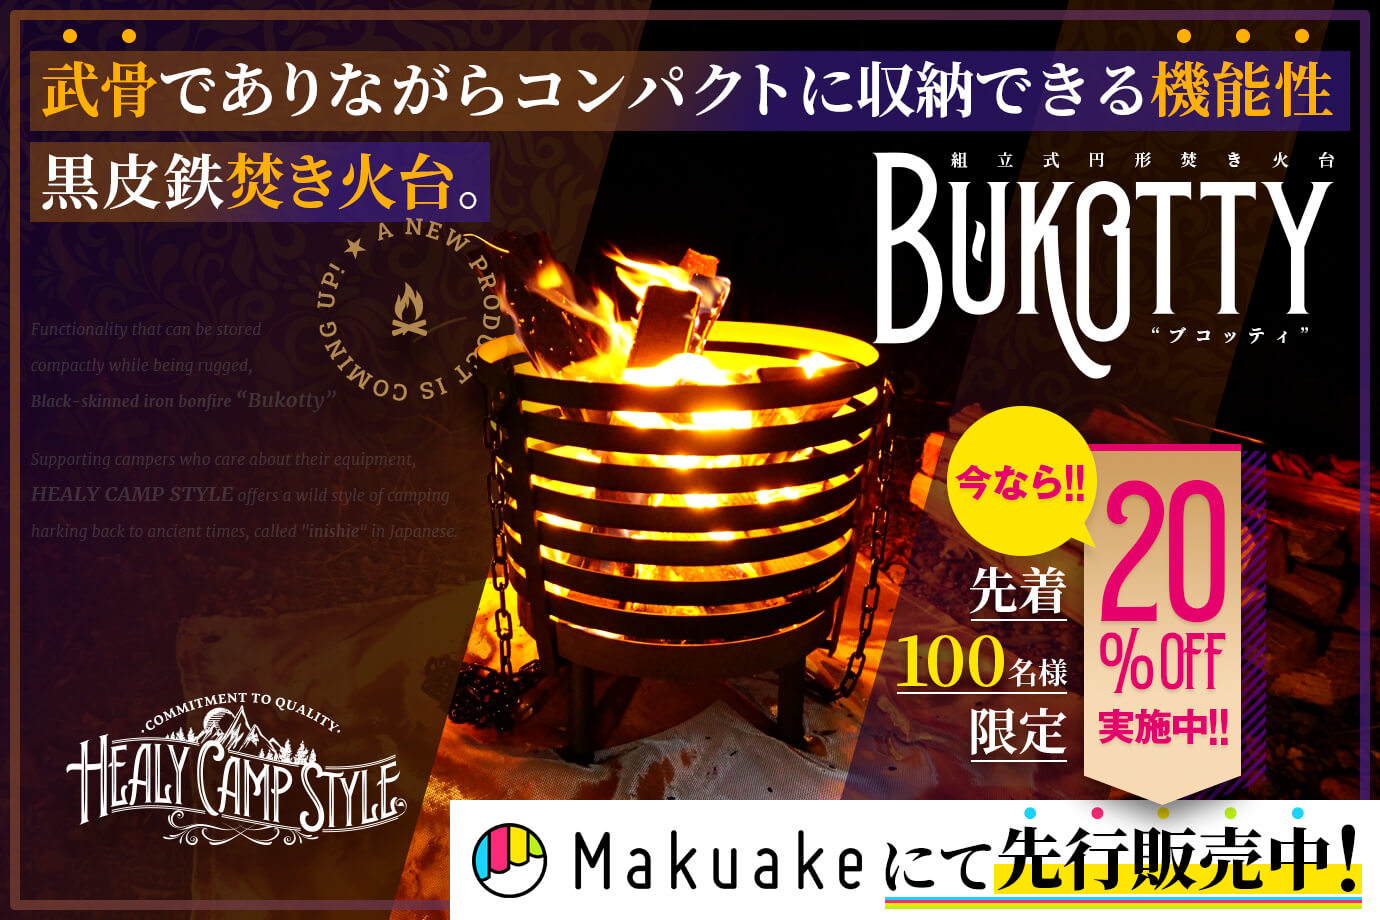 組立式円形焚き火台「Bukotty（ブコッティ）」はMakuakeにて先行販売中です